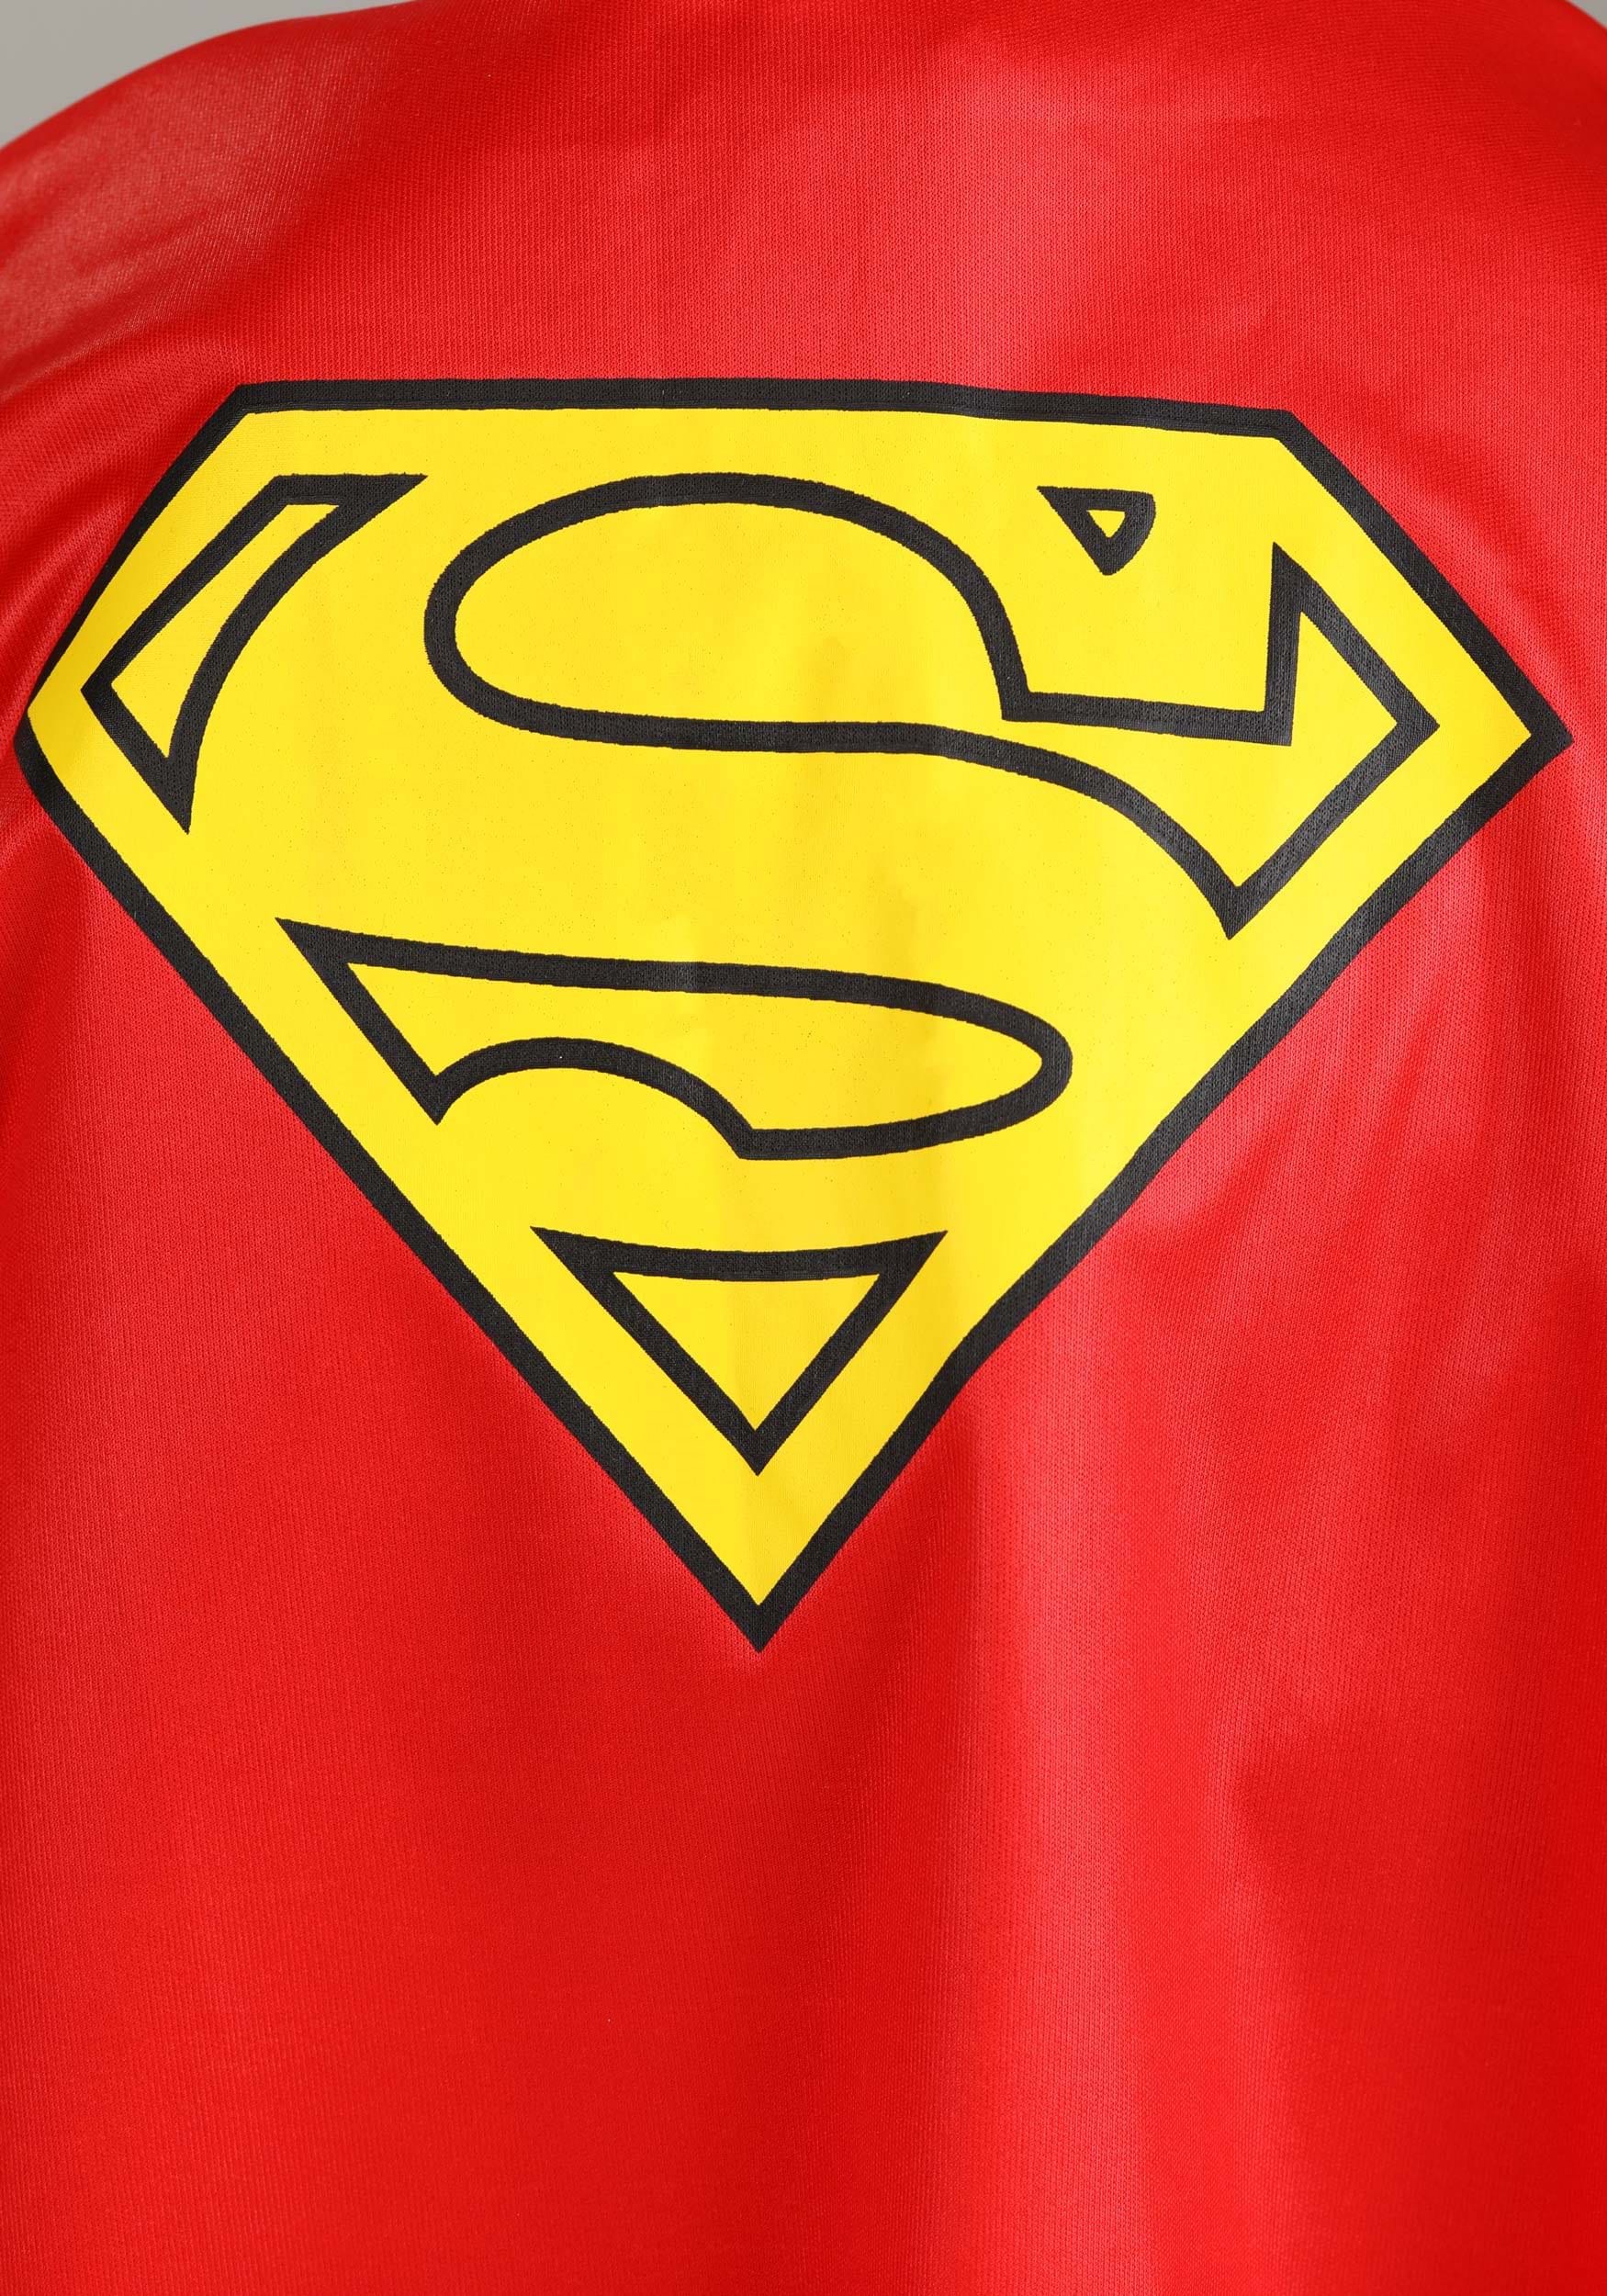 DC Comics Superman Toddler Costume